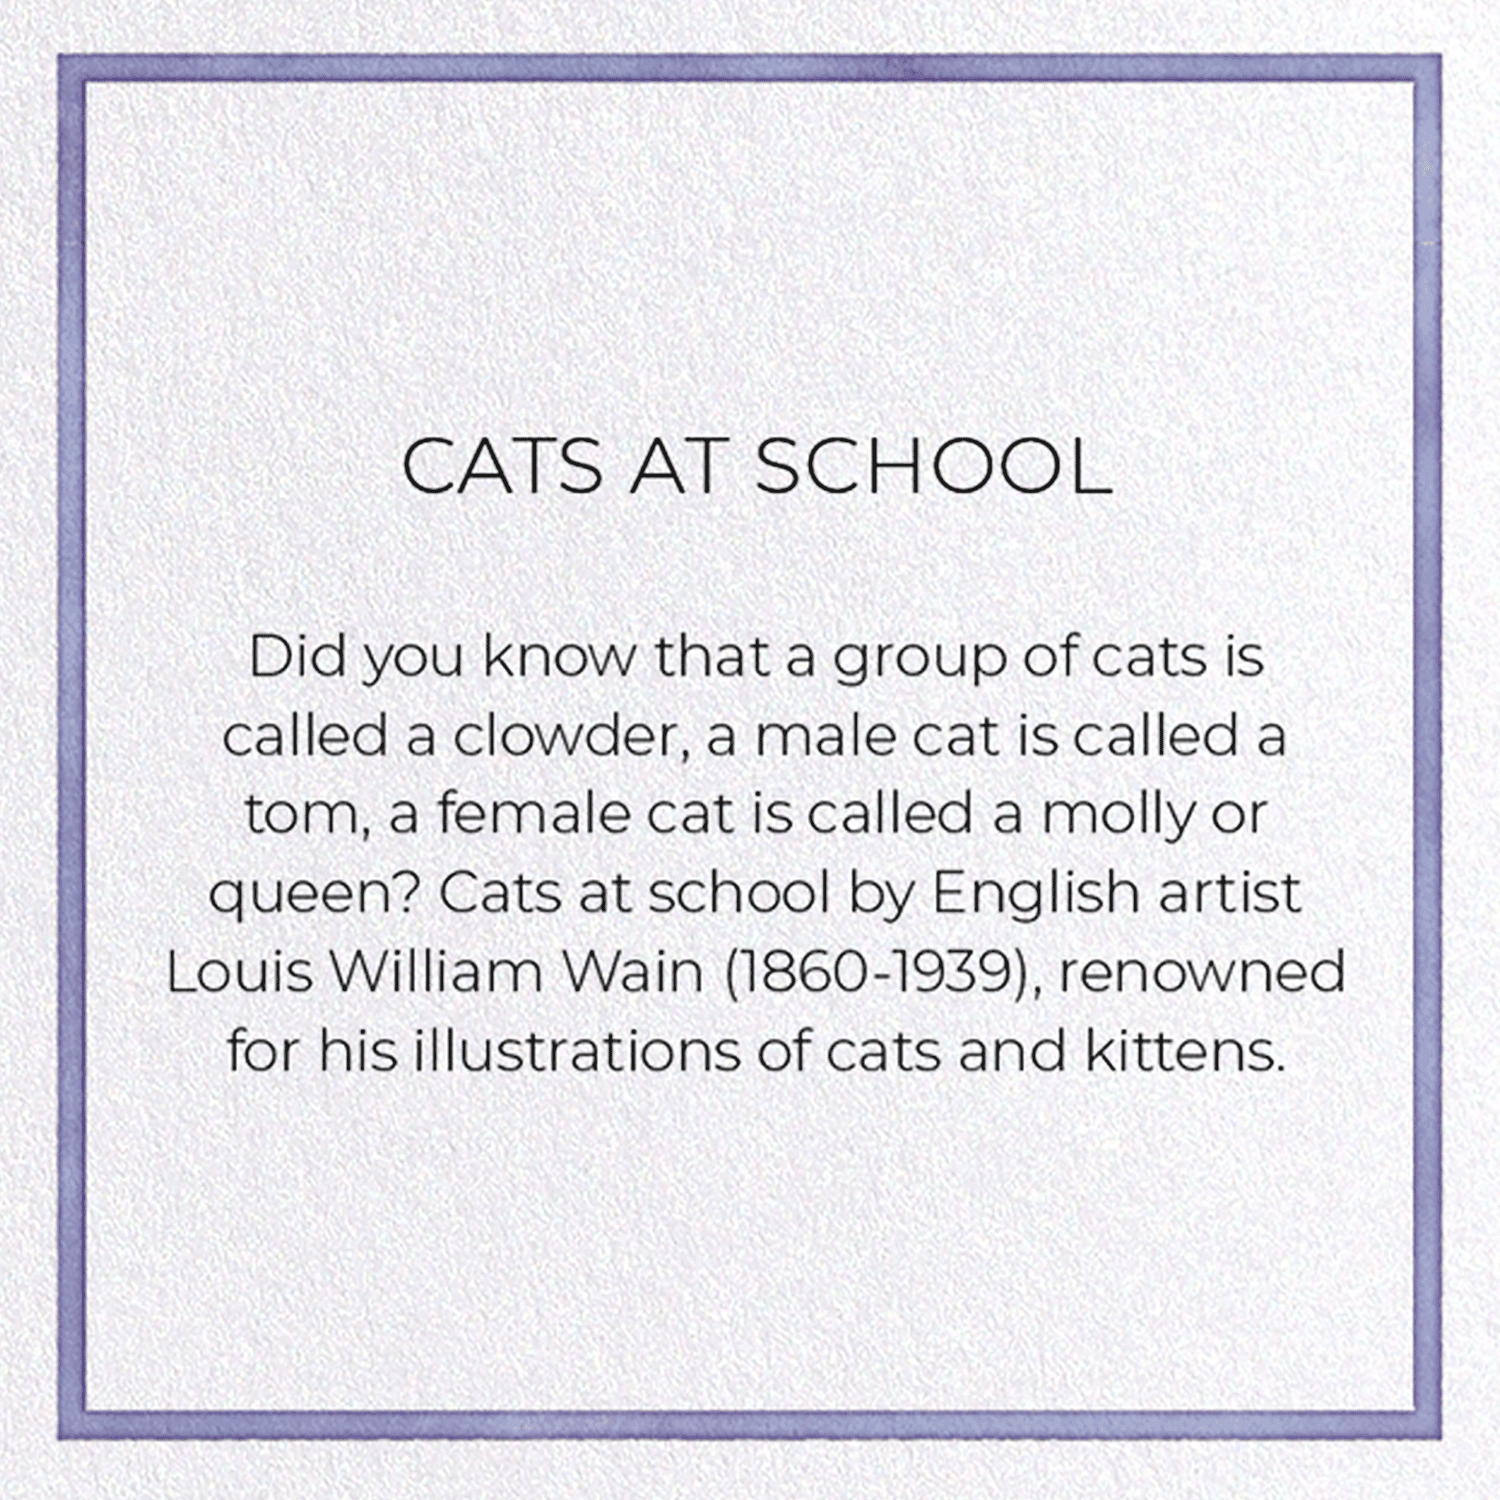 CATS AT SCHOOL